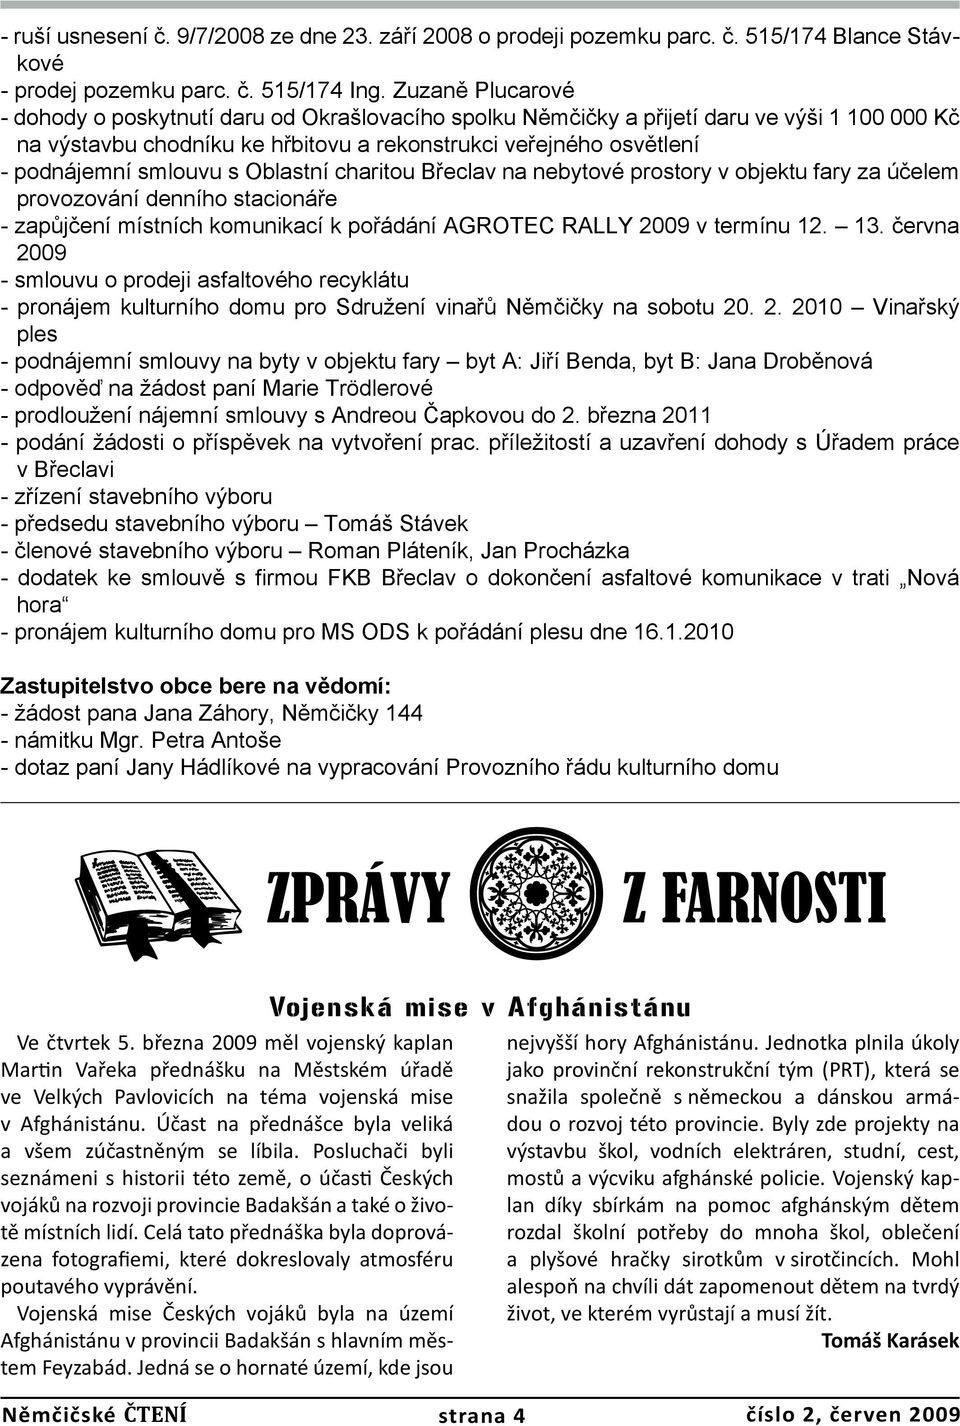 smlouvu s Oblastní charitou Břeclav na nebytové prostory v objektu fary za účelem provozování denního stacionáře - zapůjčení místních komunikací k pořádání AGROTEC RALLY 2009 v termínu 12. 13.